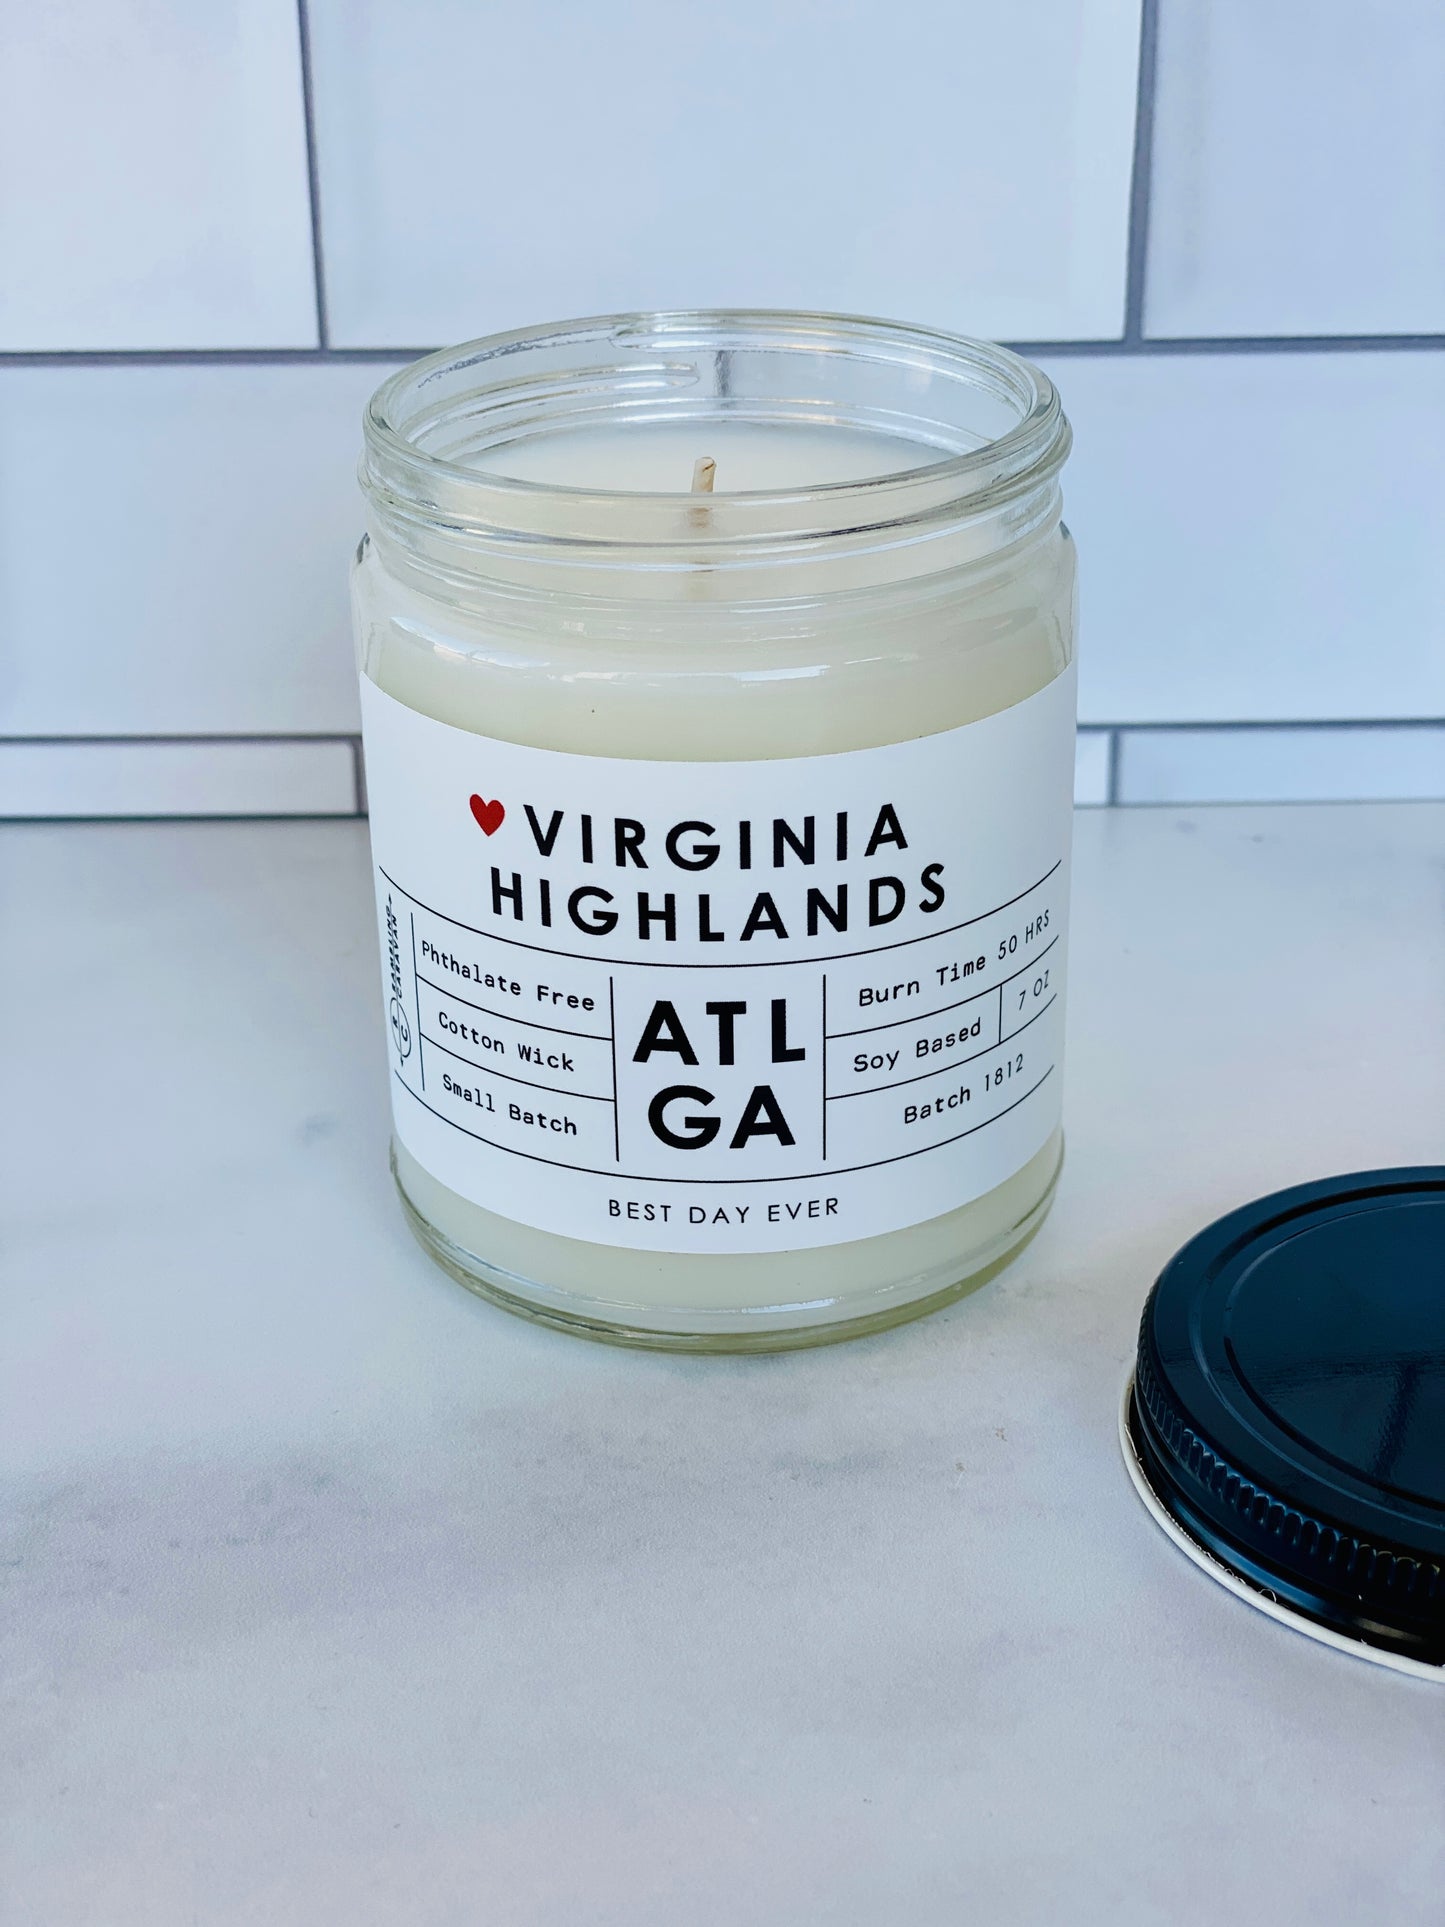 Virginia Highlands, Atlanta, GA Candle